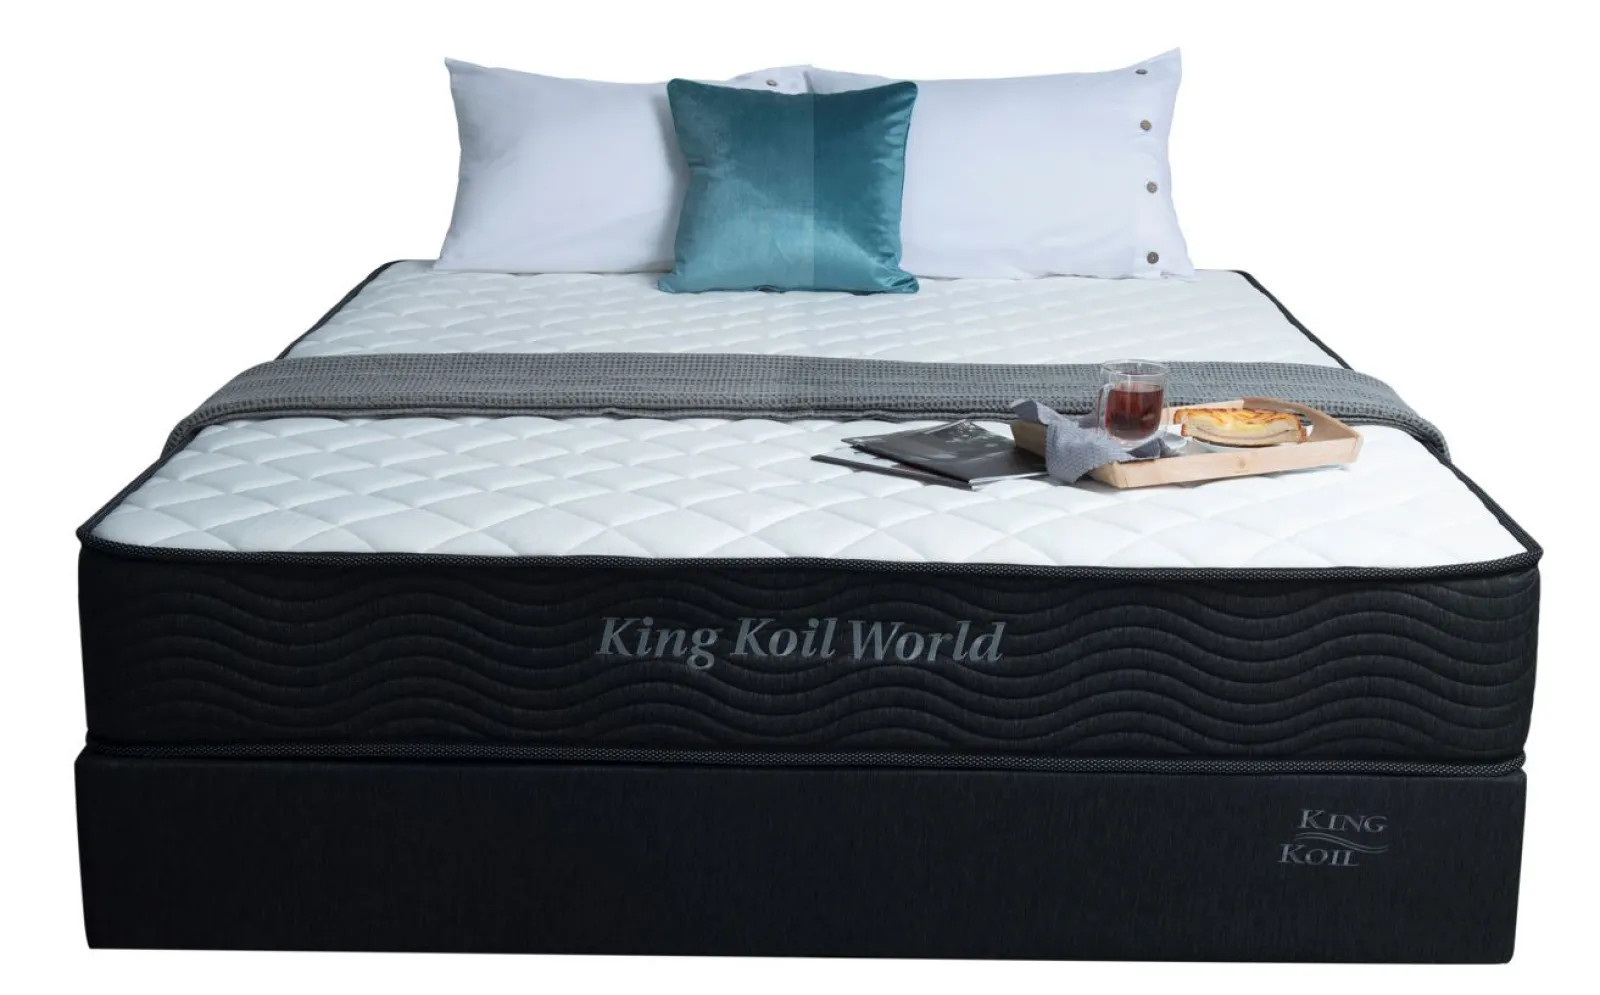 Nệm lò xo King Koil World_Sử dụng công nghệ Thêu Tên hoặc Thông Điệp_Độ dày 25cm